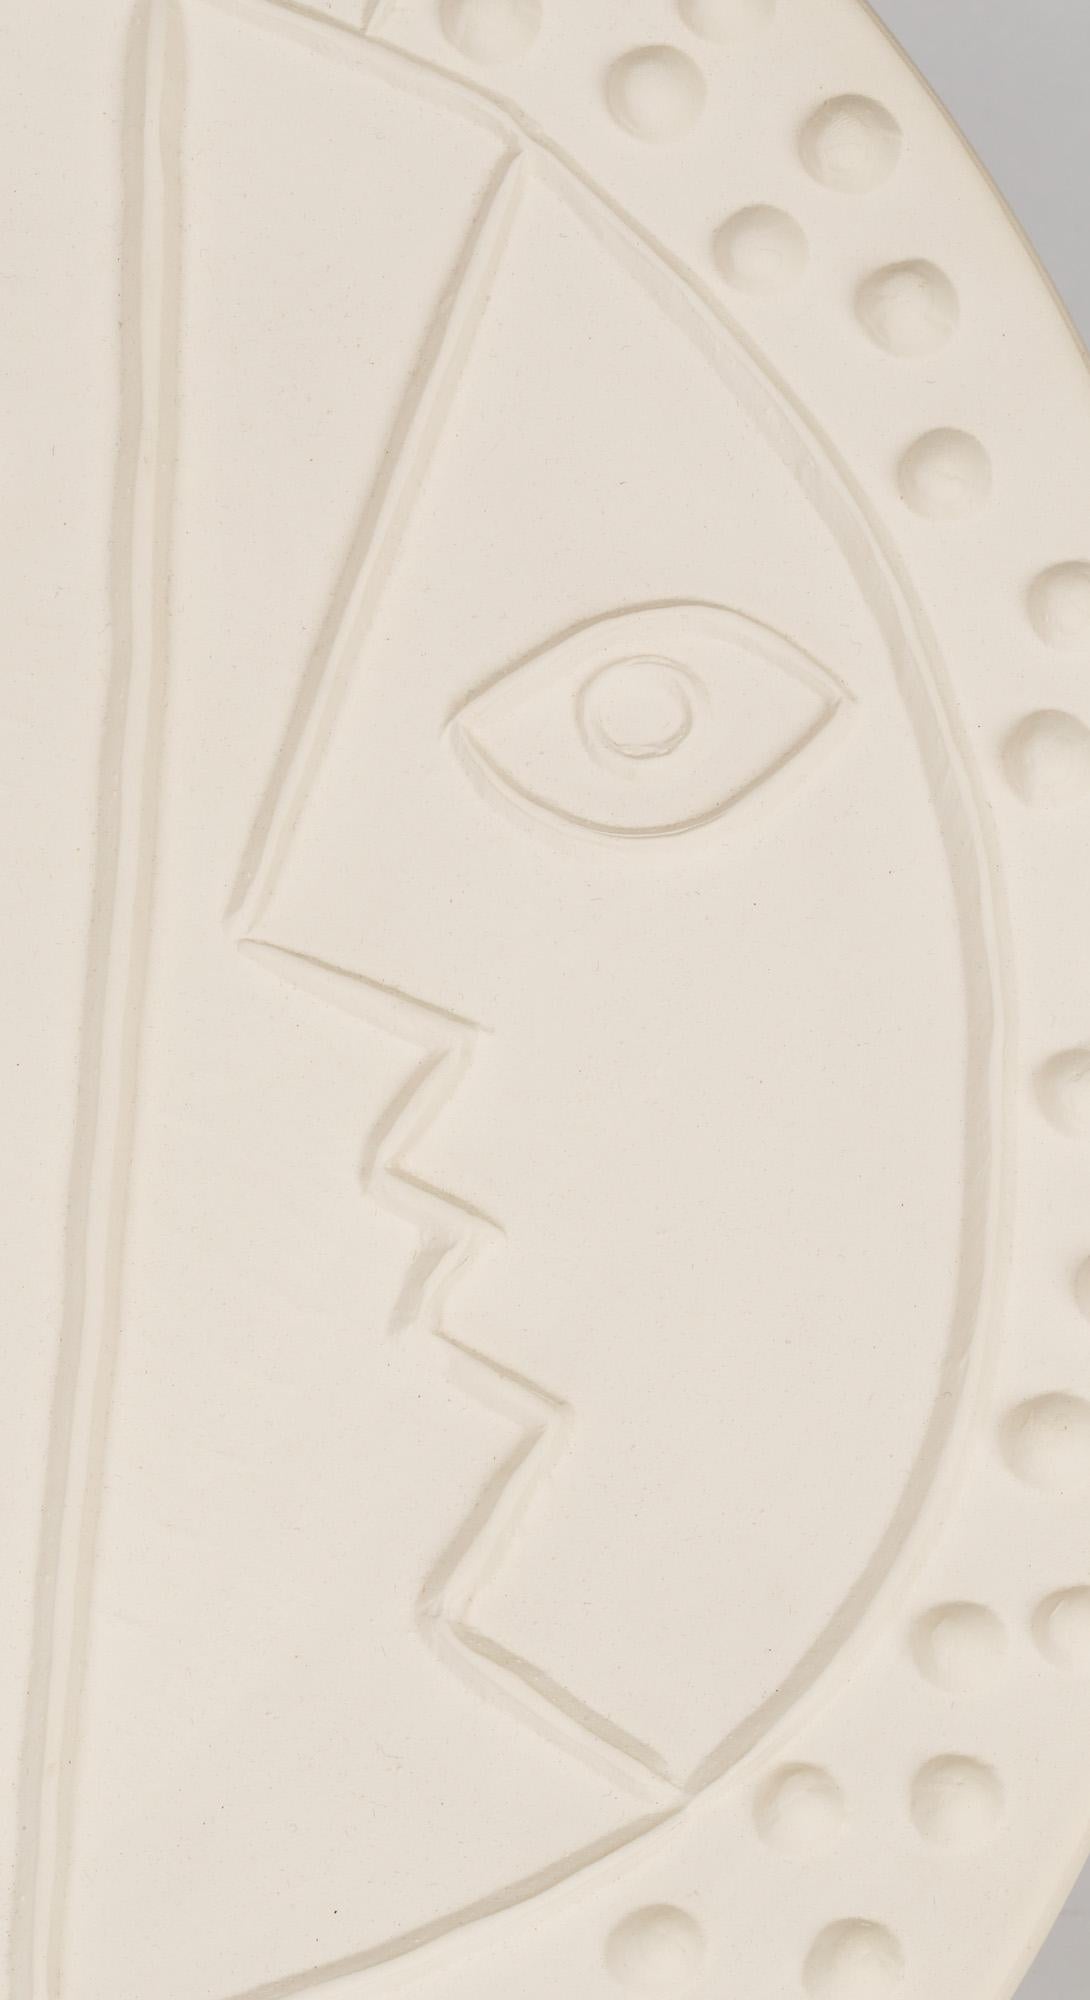 Ein stilvoller Teller aus Vallauris (A.R. 330) aus Fayence in limitierter Auflage, der drei Gesichter von Pablo Picasso darstellt und auf 1956 datiert ist. Der runde Teller ist aus weißem Steingut getöpfert und mit drei Gesichtern verziert, von